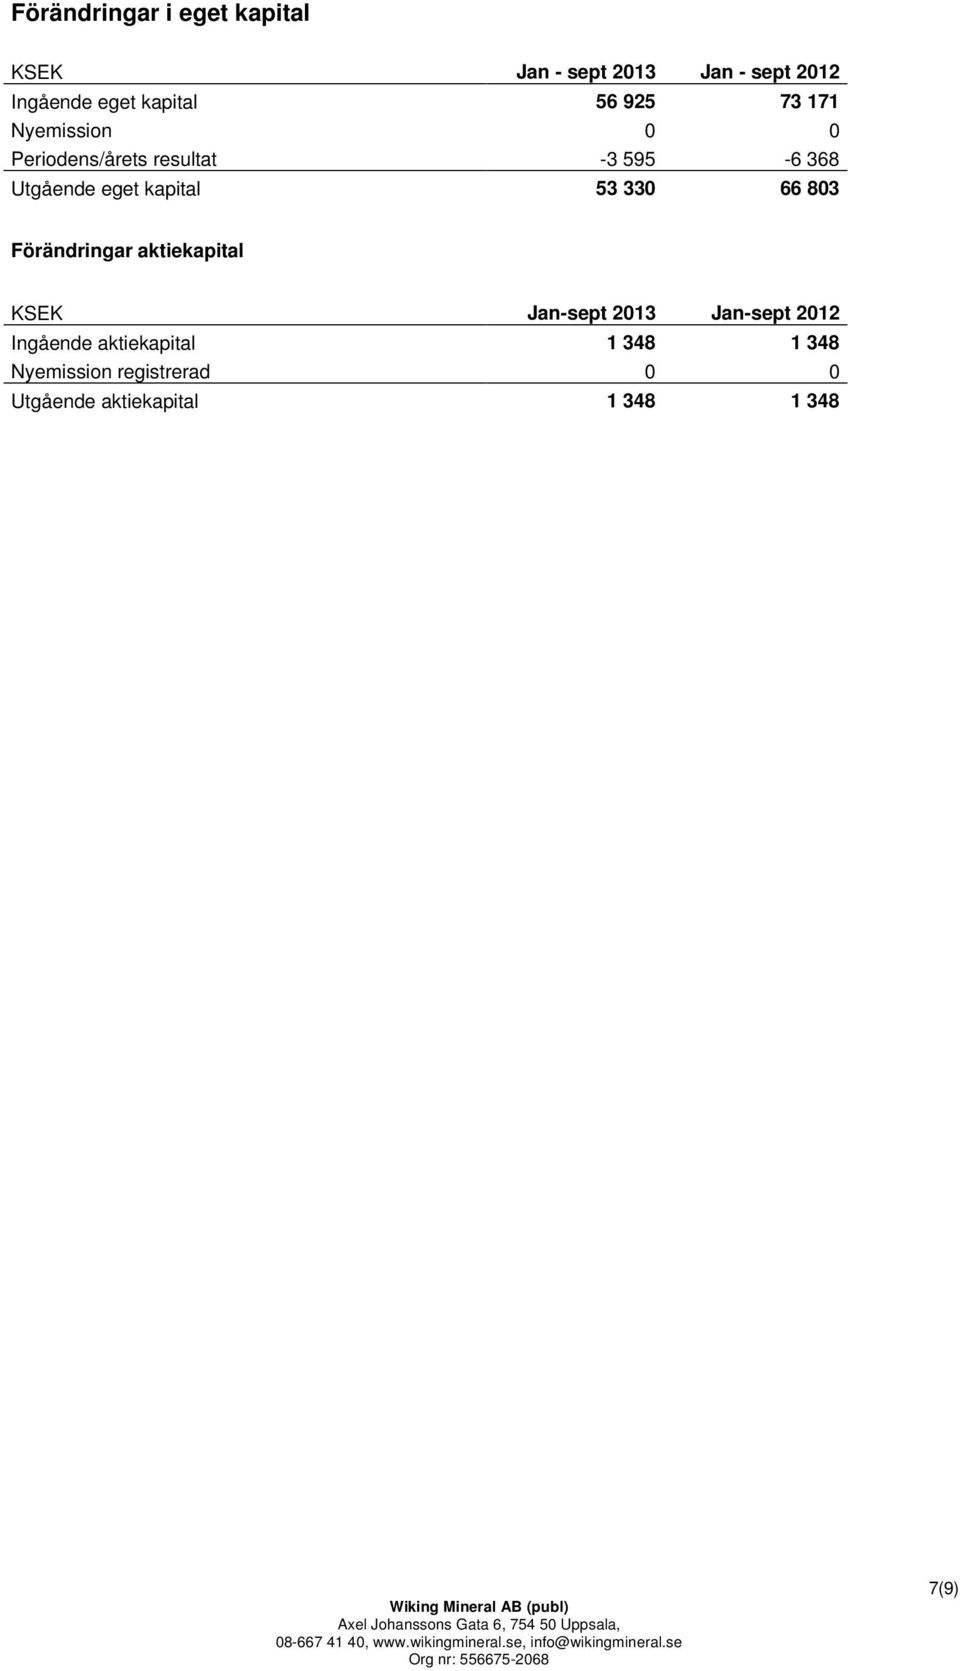 kapital 53 330 66 803 Förändringar aktiekapital KSEK Jan-sept 2013 Jan-sept 2012